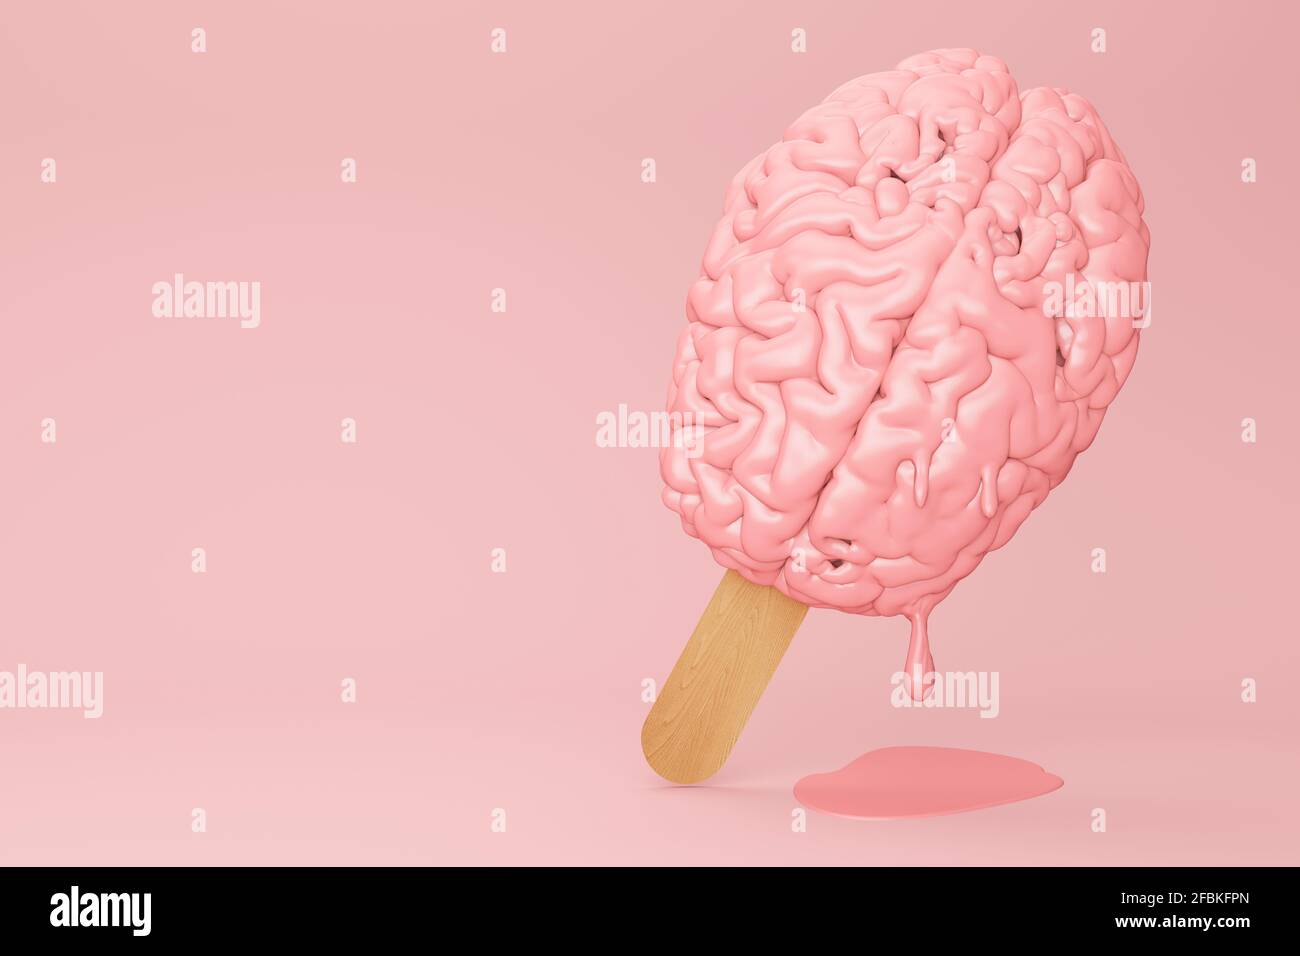 https://c8.alamy.com/comp/2FBKFPN/brain-ice-cream-melting-3d-illustration-2FBKFPN.jpg